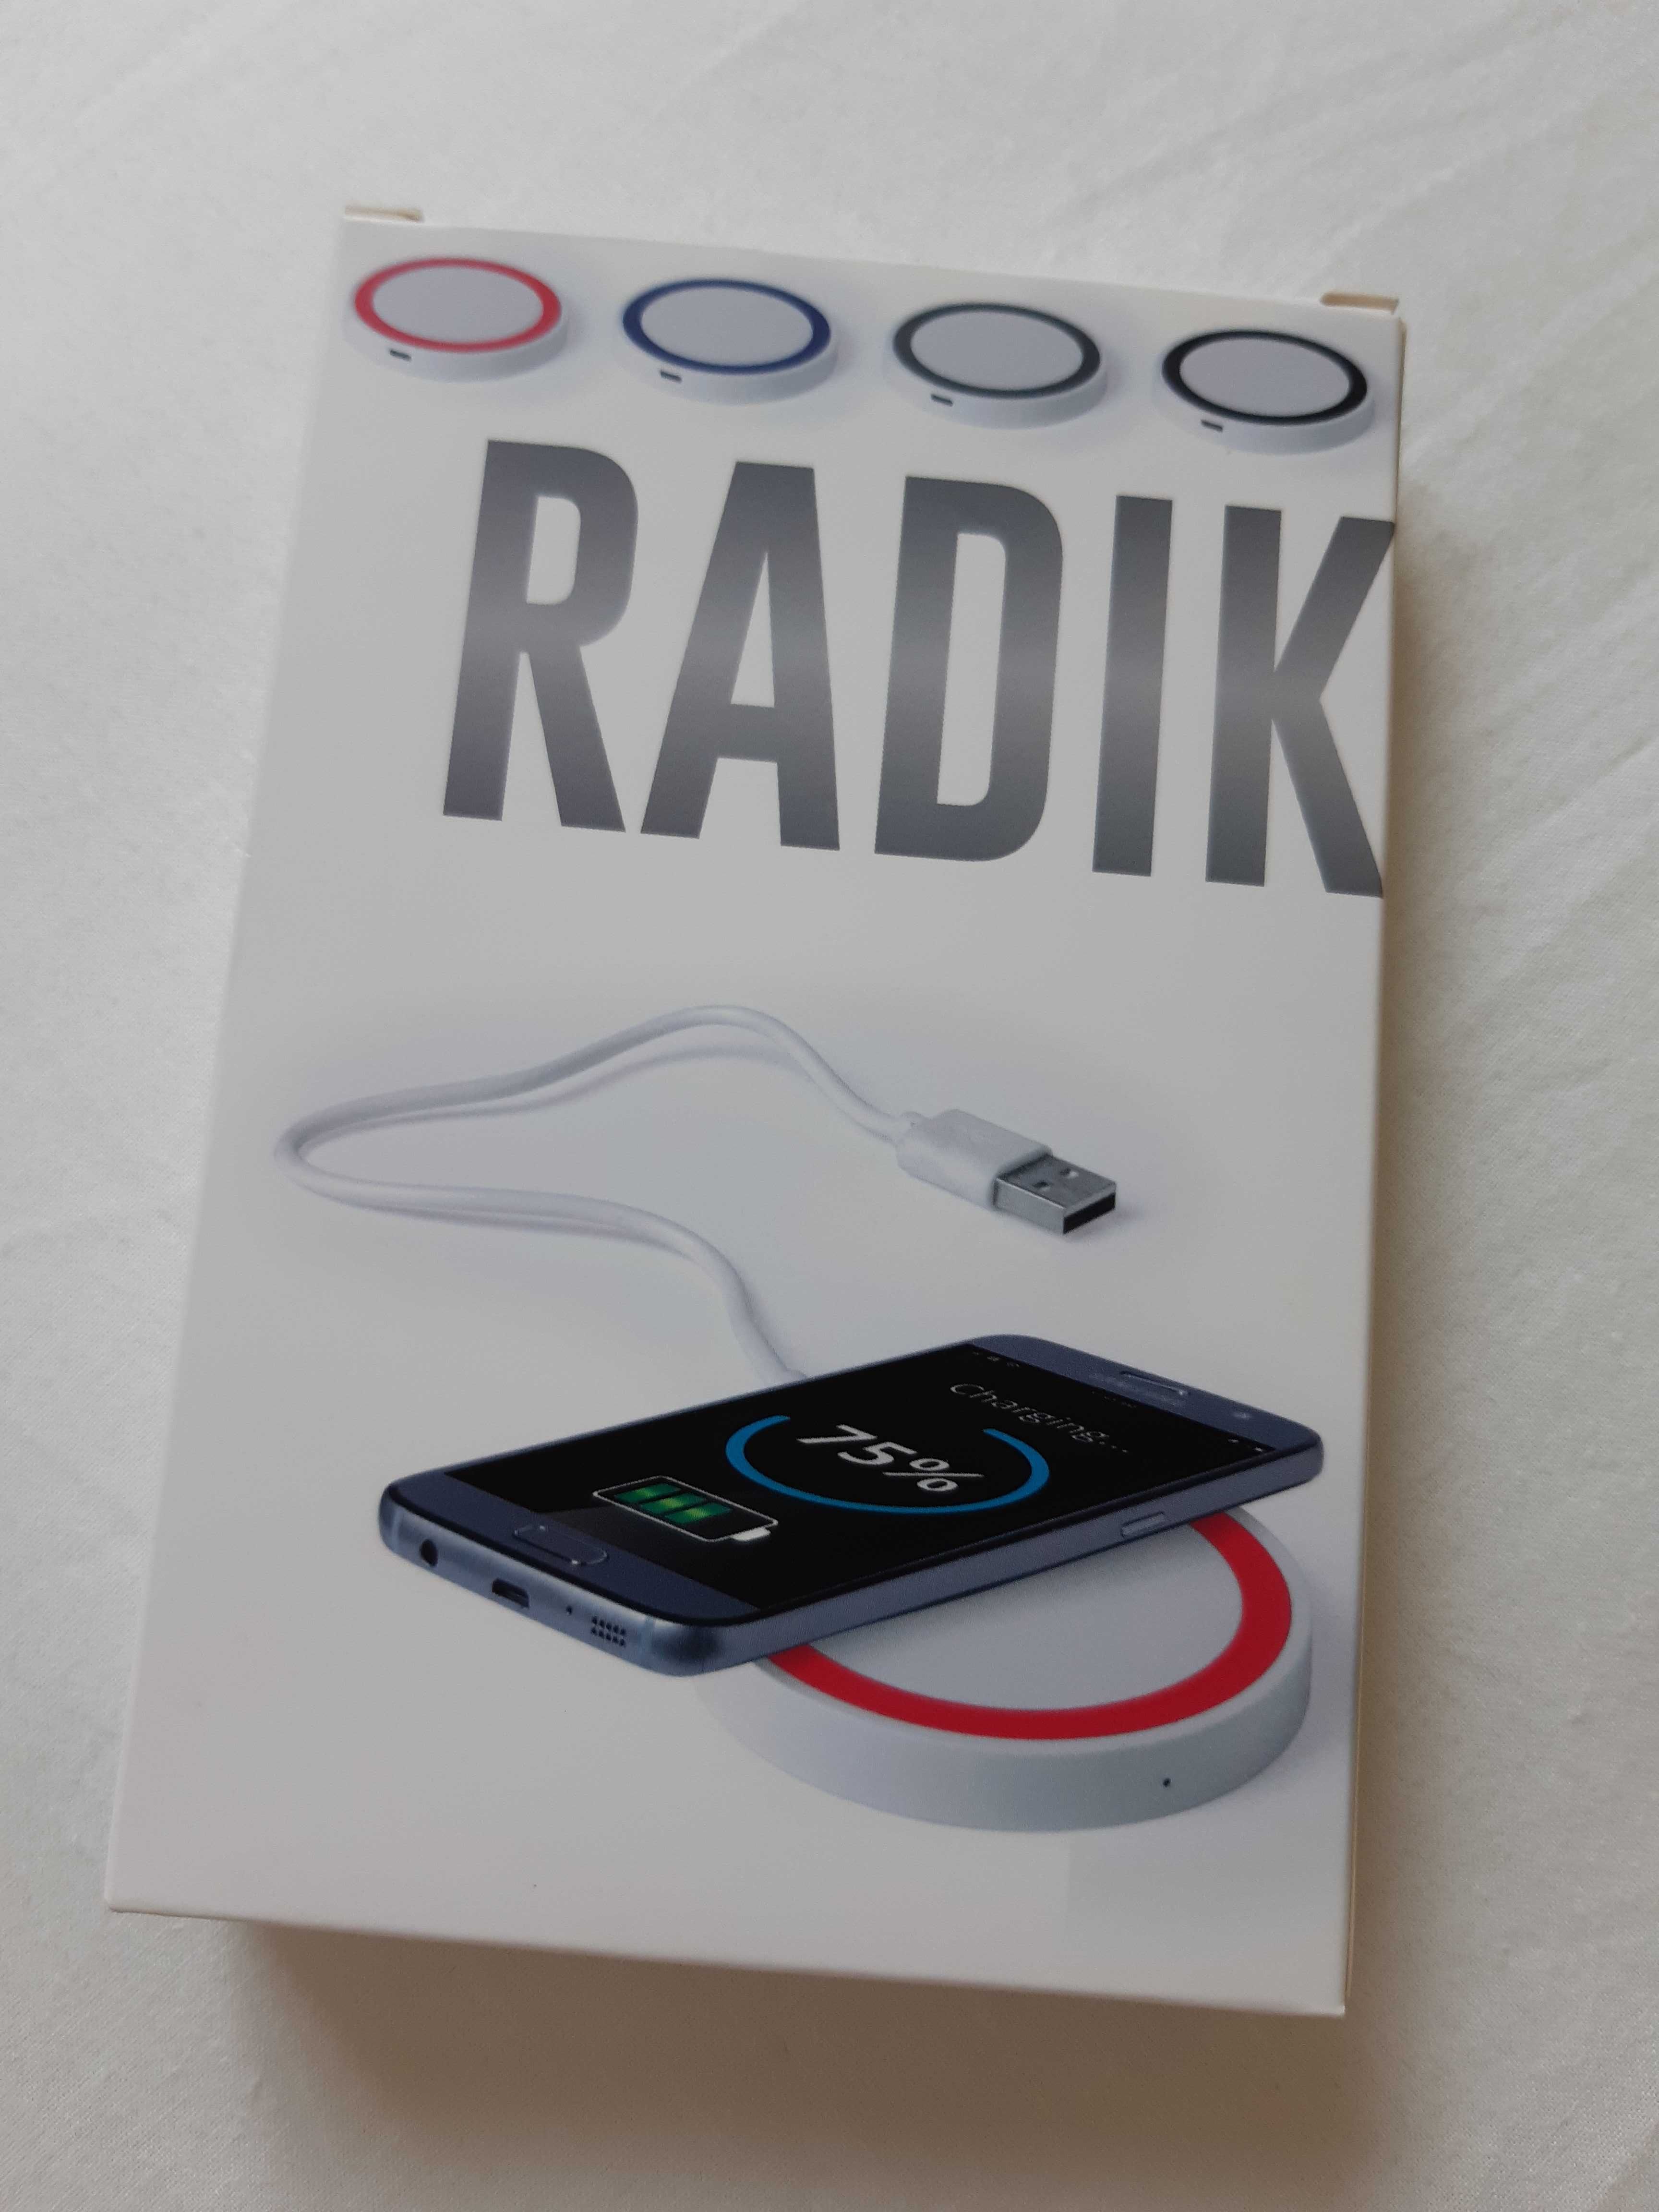 Indukcyjna bezprzewodowa ładowarka do smartfona Radik nowa